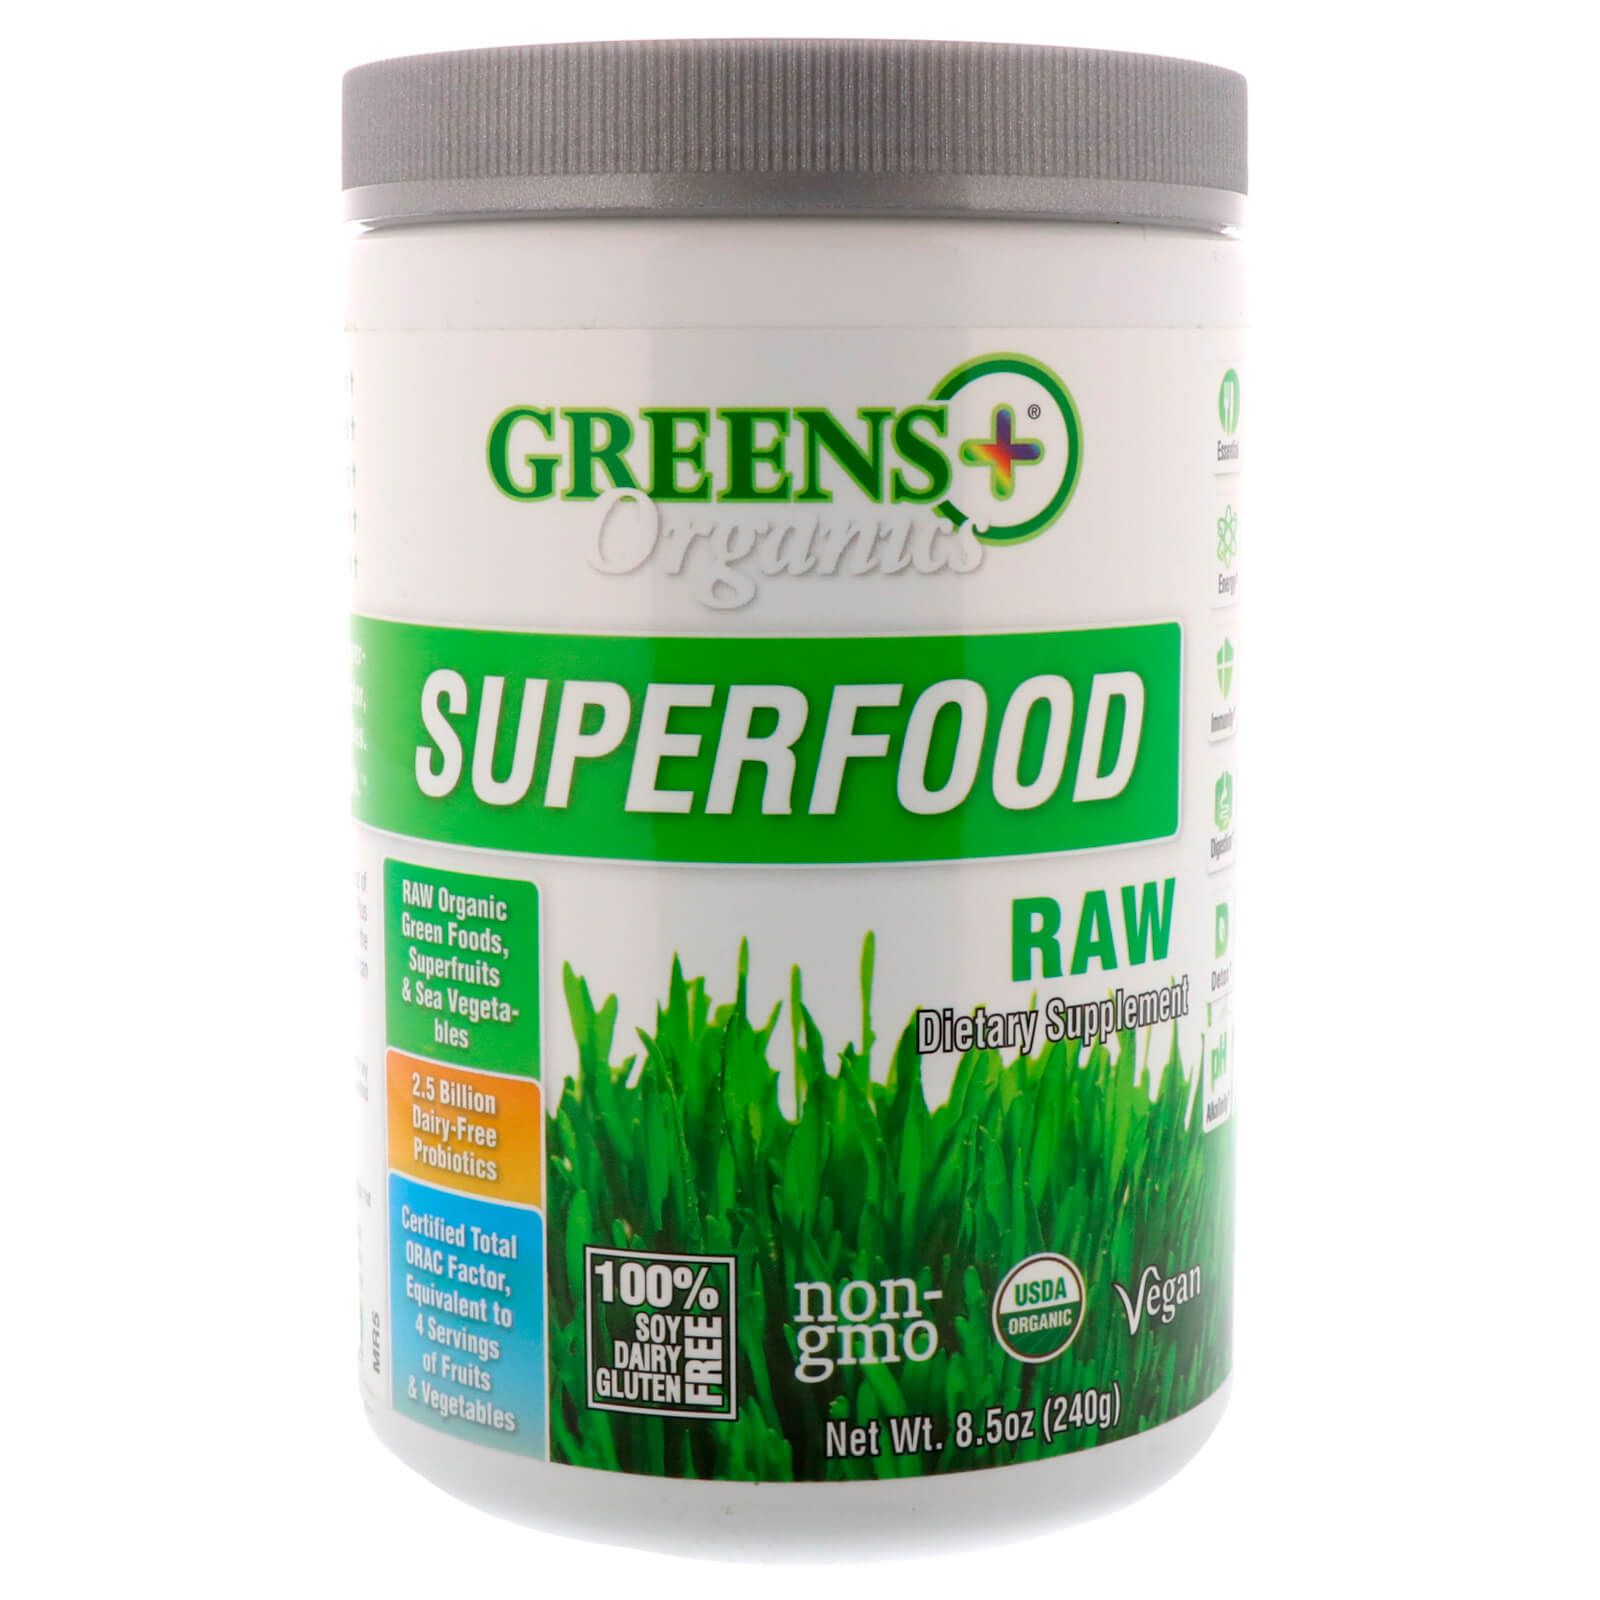 Greens Plus Organics Superfood Необработанный продукт 8,5 унц. (240 г)